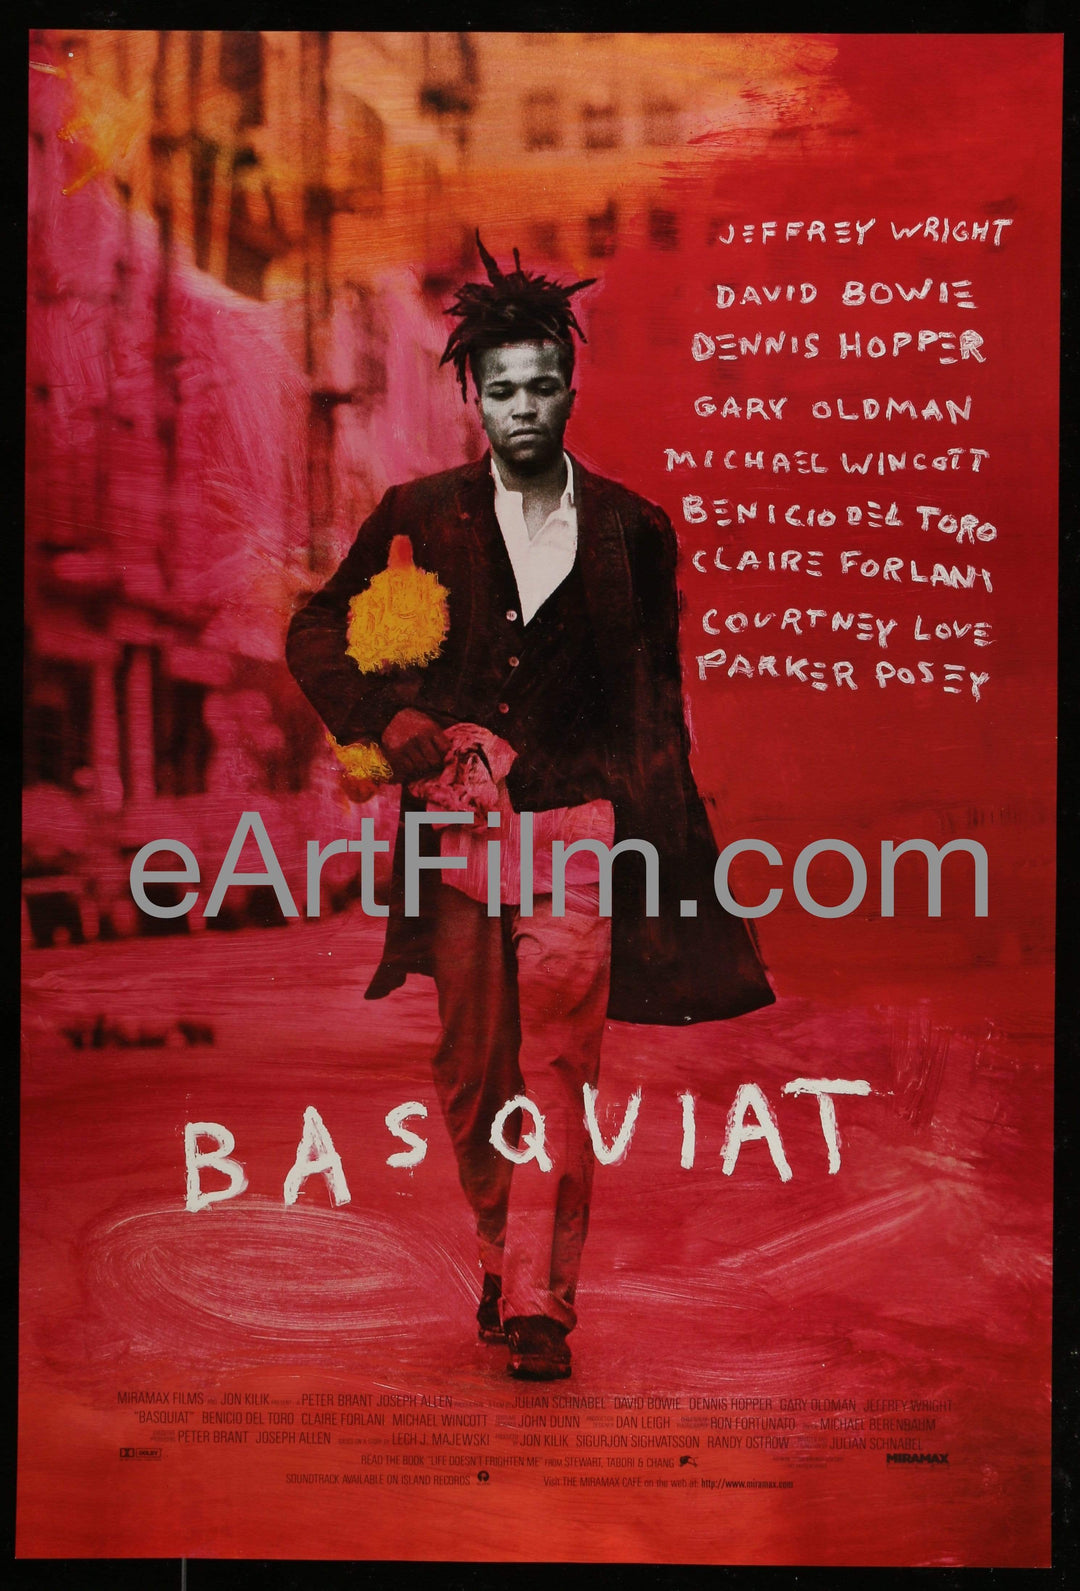 eArtFilm.com U.S One Sheet (27"x40") Basquiat-Jeffrey Wright-David Bowie-Gary Oldman-Courtney Love-1997-27x40